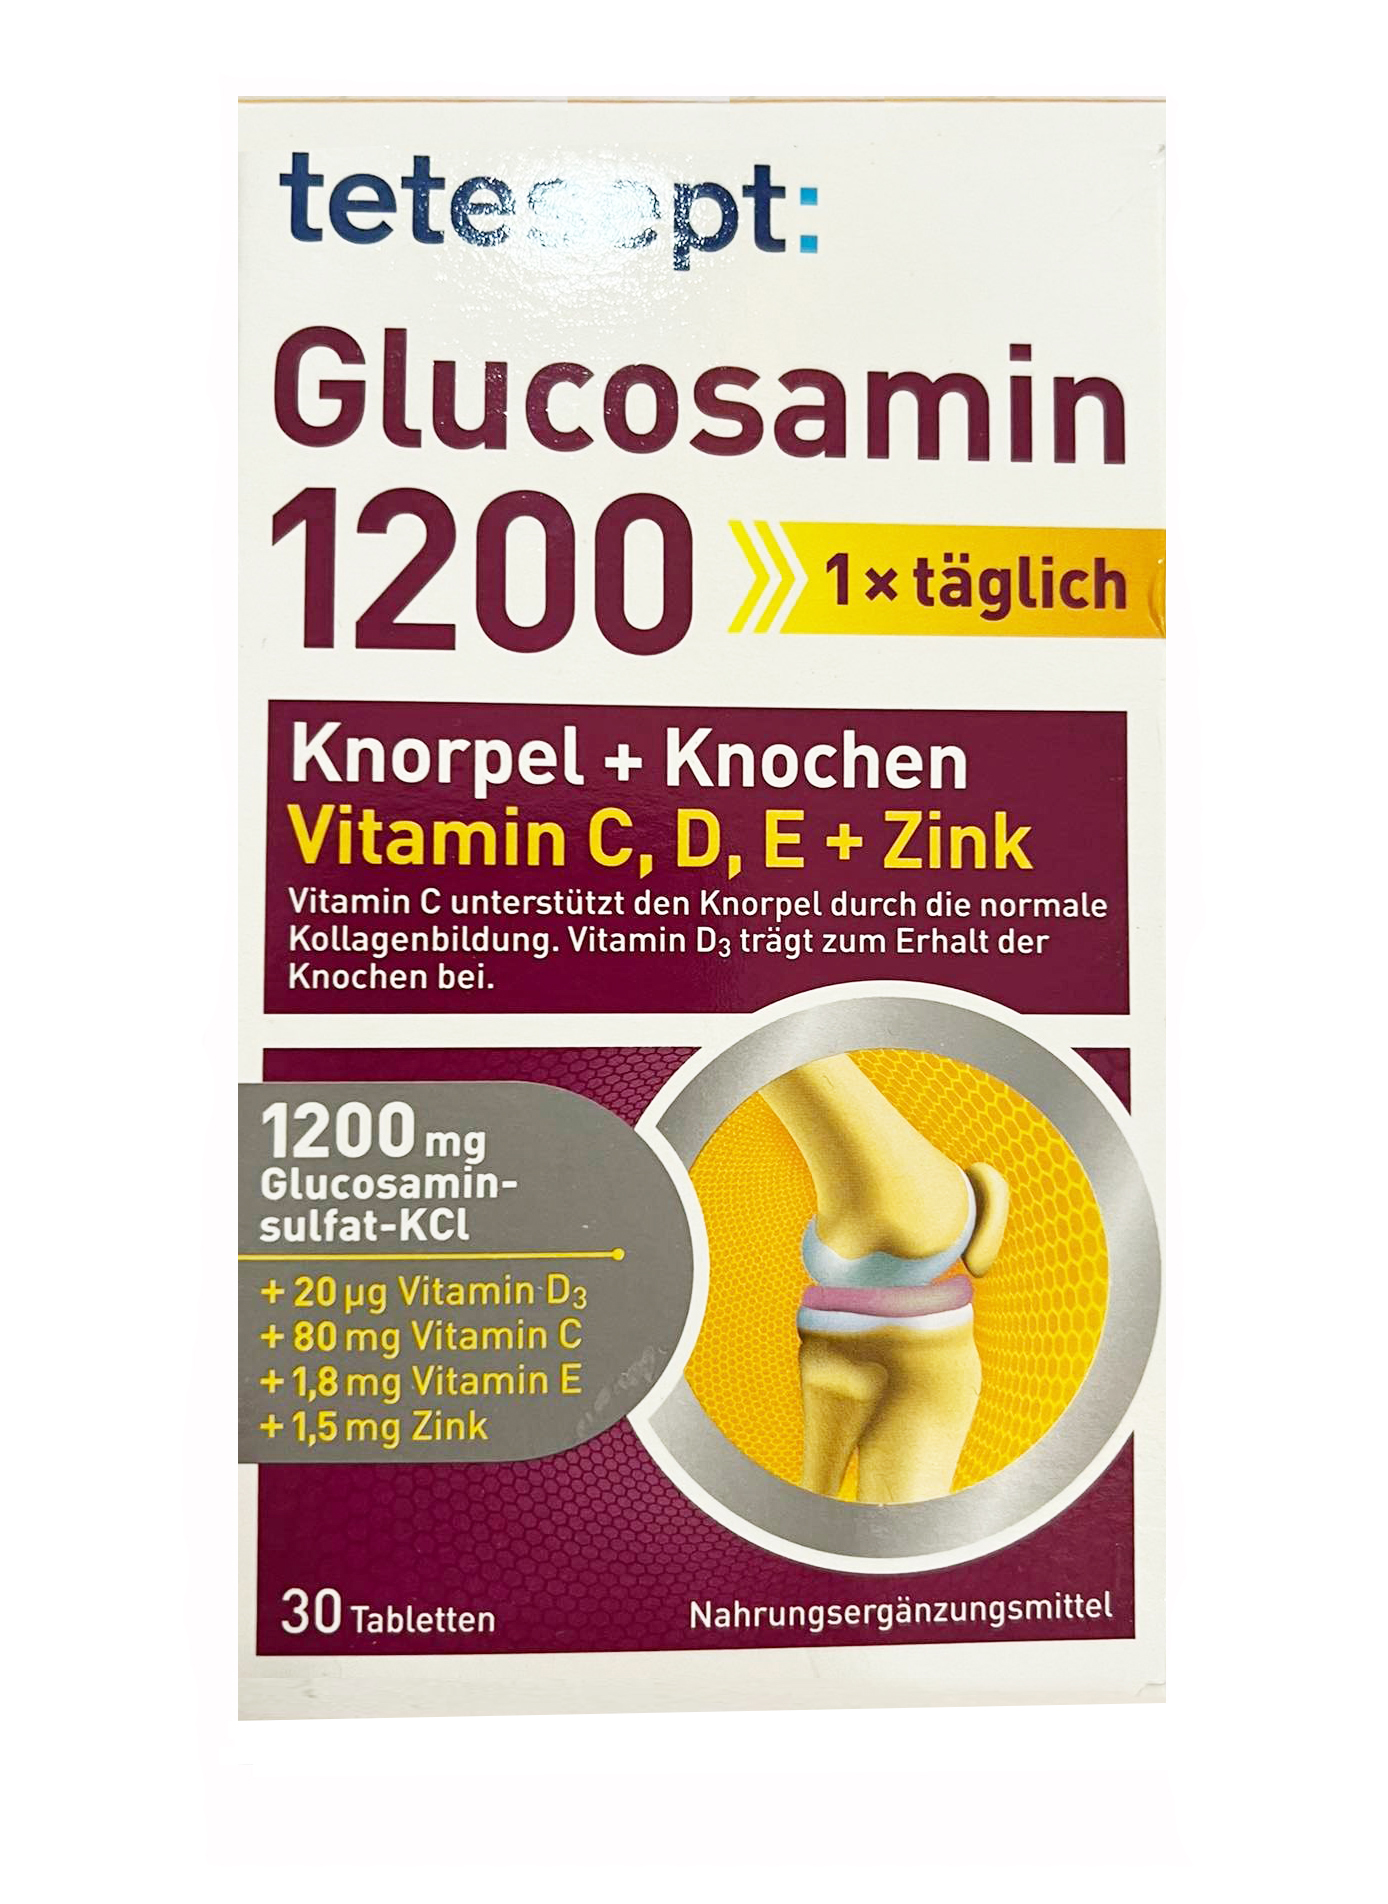 Cách sử dụng và liều lượng của thuốc glucosamine của Đức.